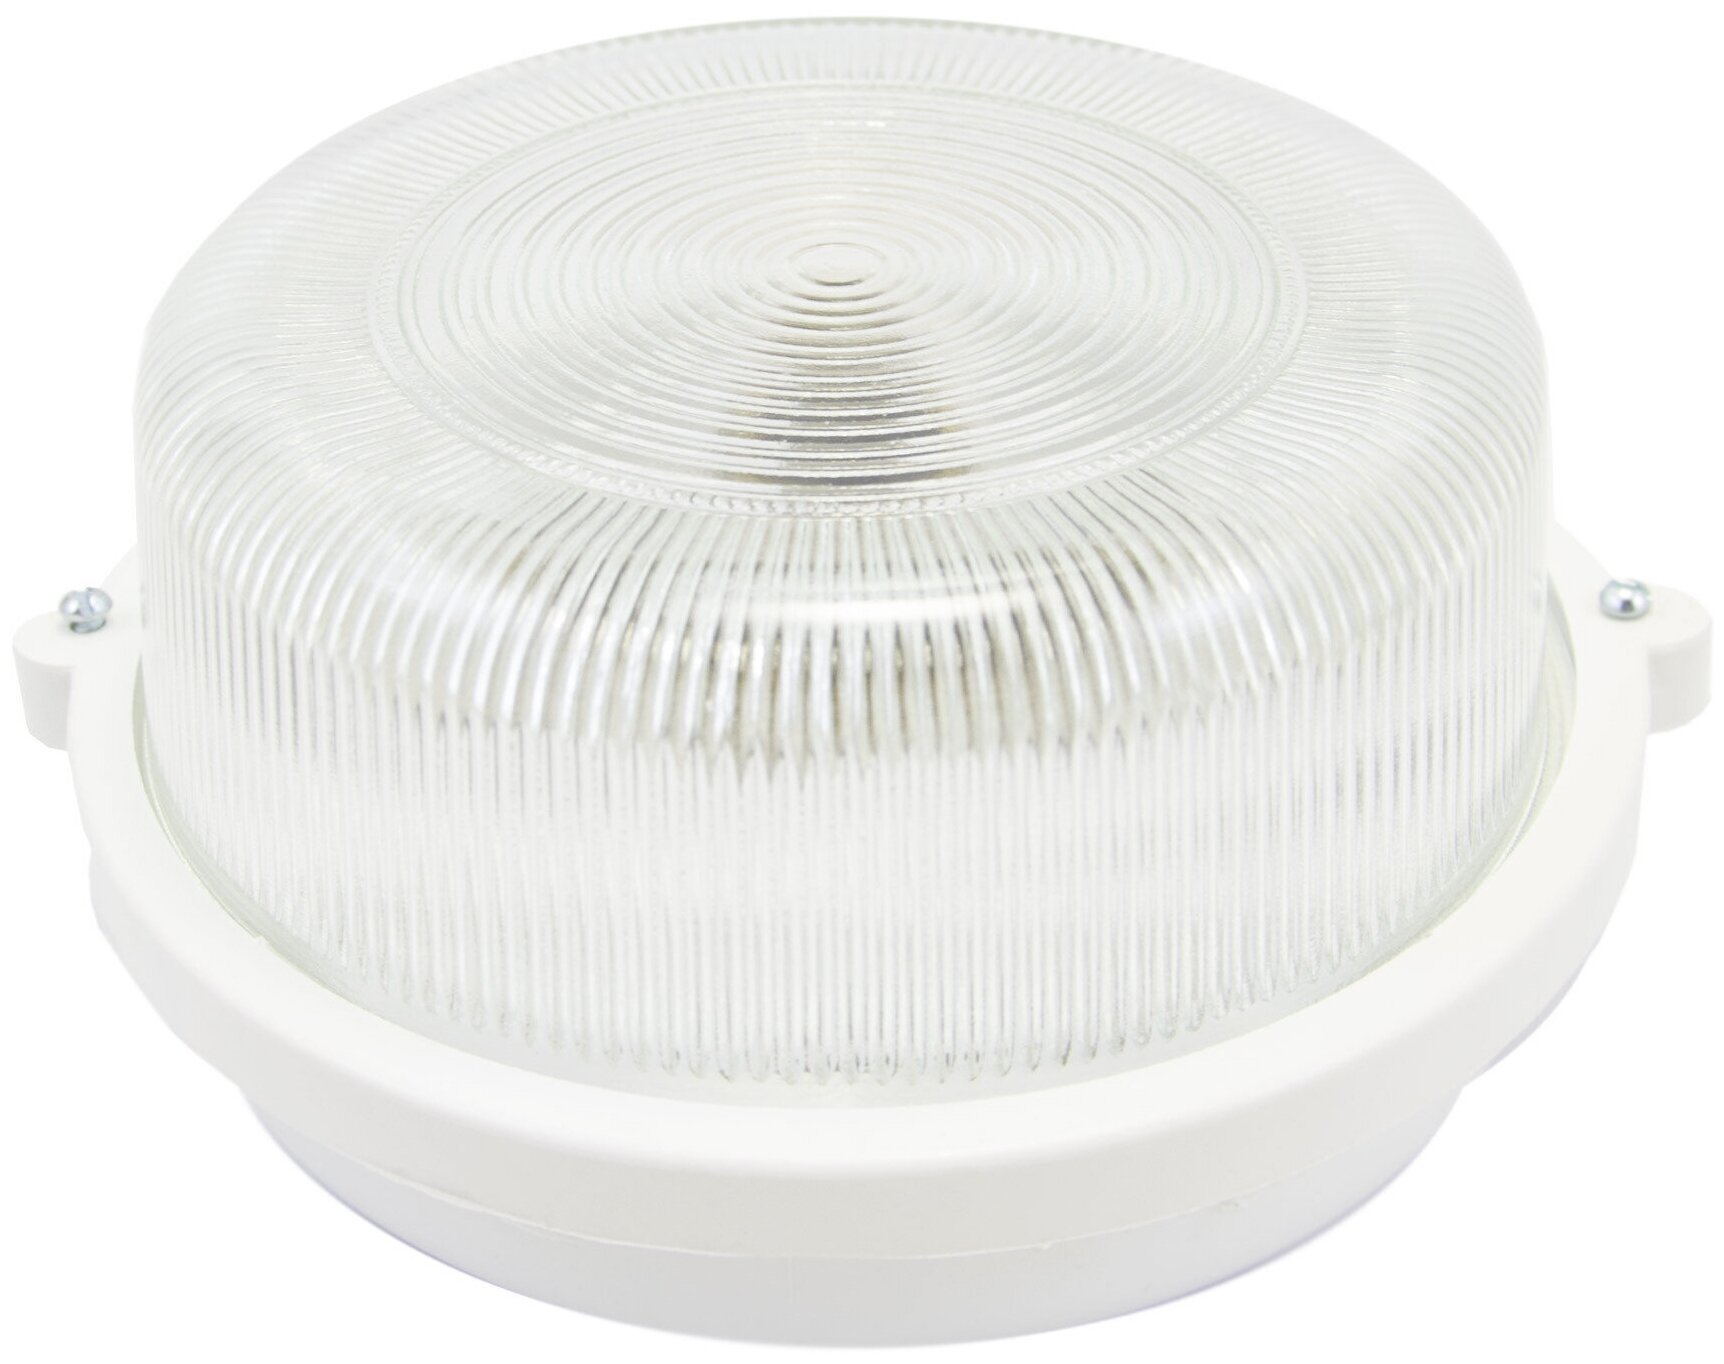 Декоративный настенный светильник с белым пластиковым корпусом и креплением на планку без ламп на стену или потолок Е27 100Вт IP53 220В